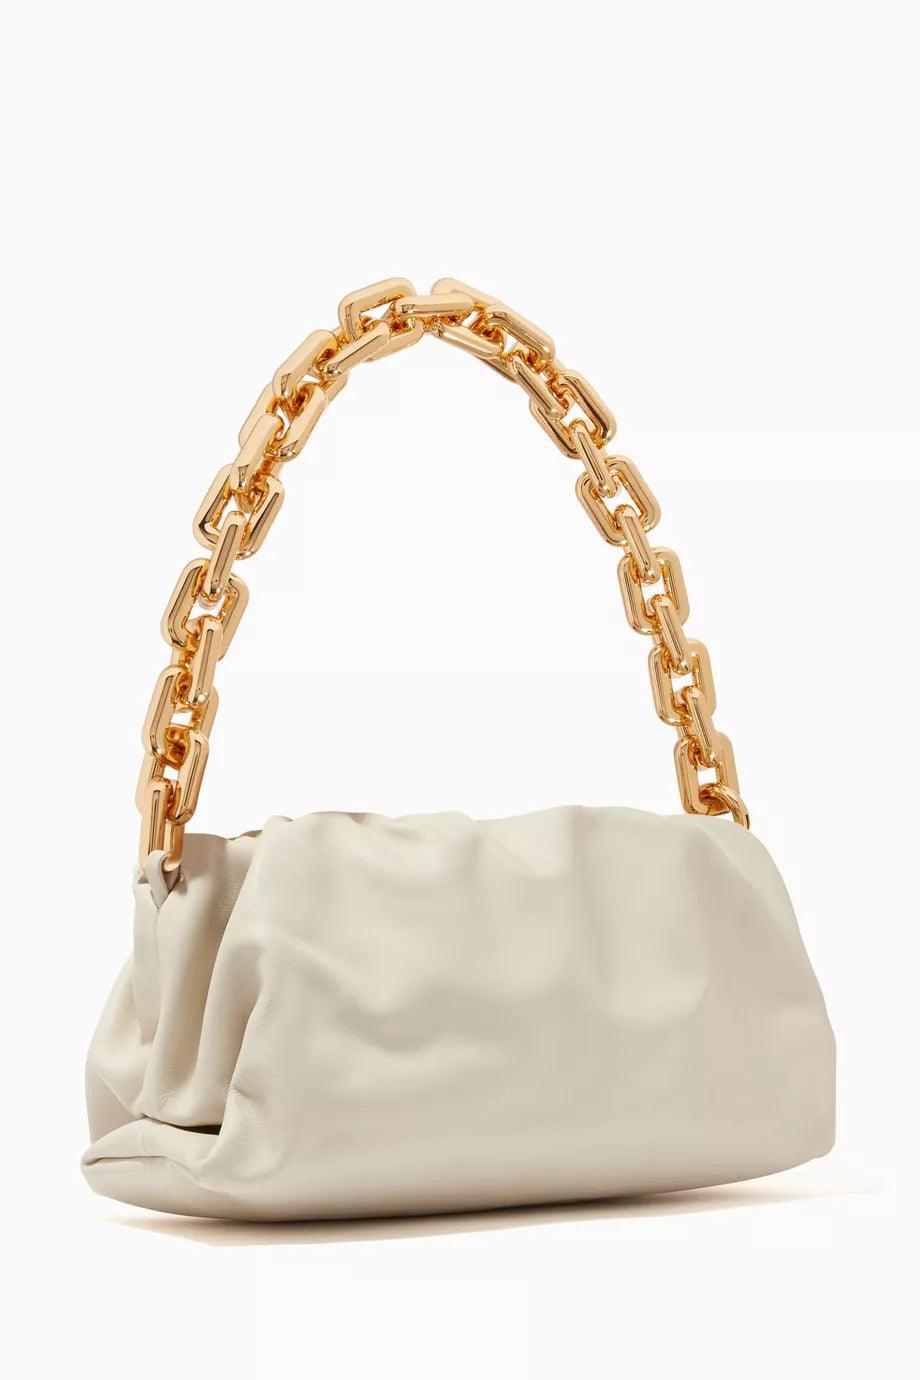 Bottega Veneta White Chain Pouch Handbag Cream - Endless